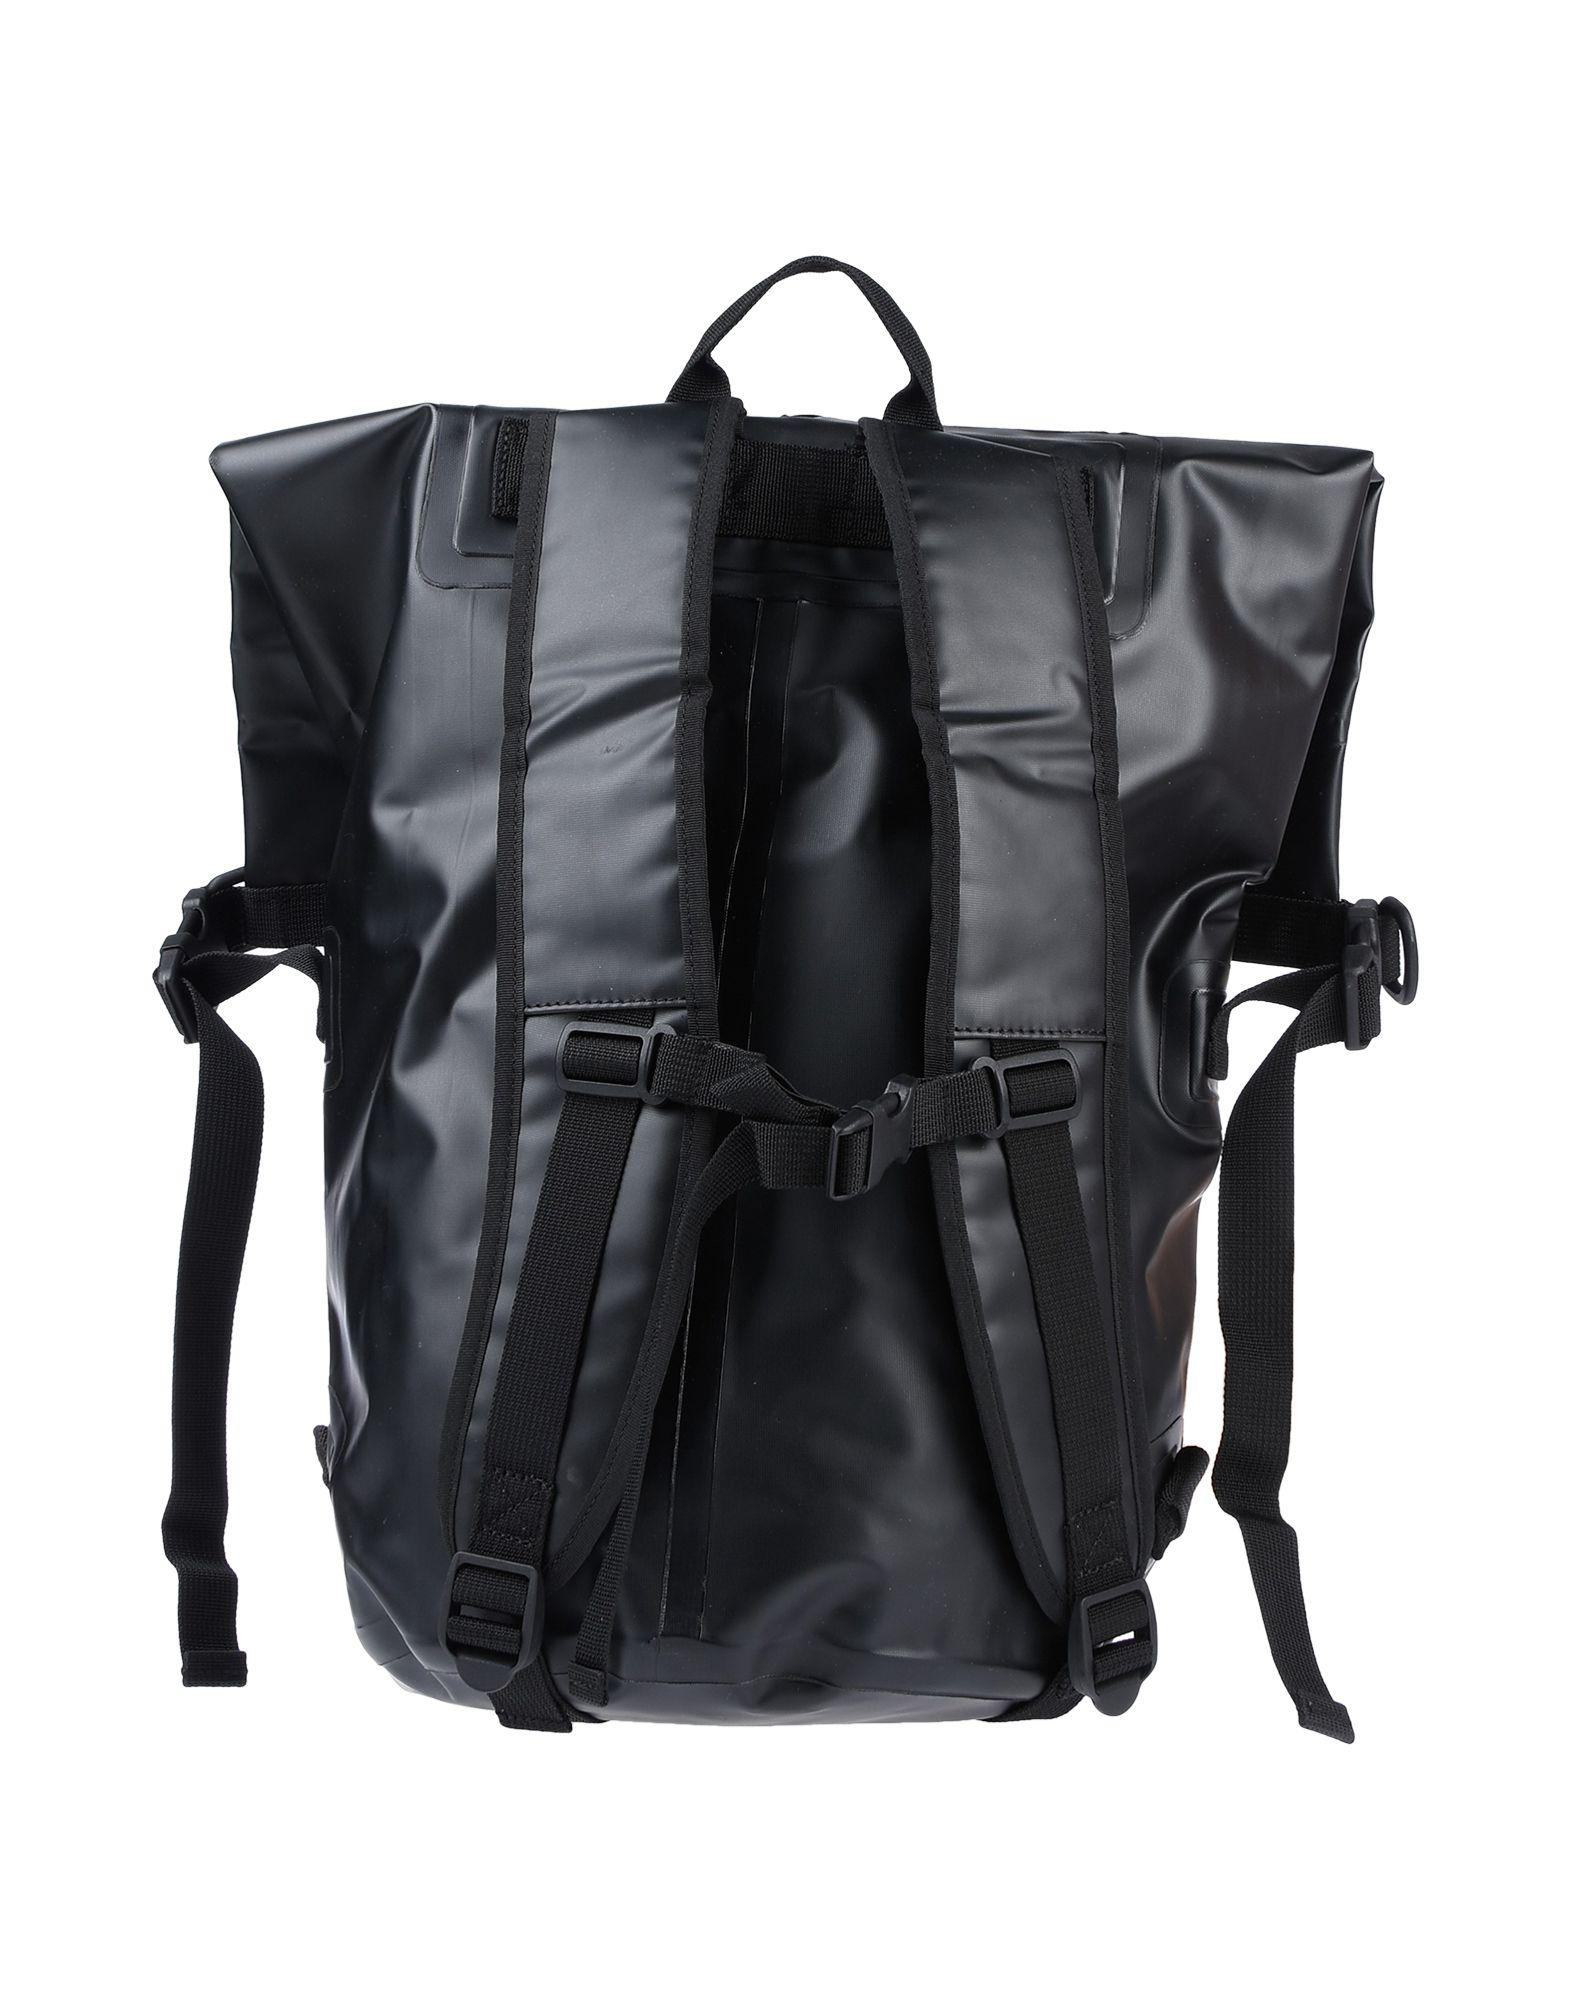 Carhartt Backpacks & Fanny Packs in Black for Men - Lyst